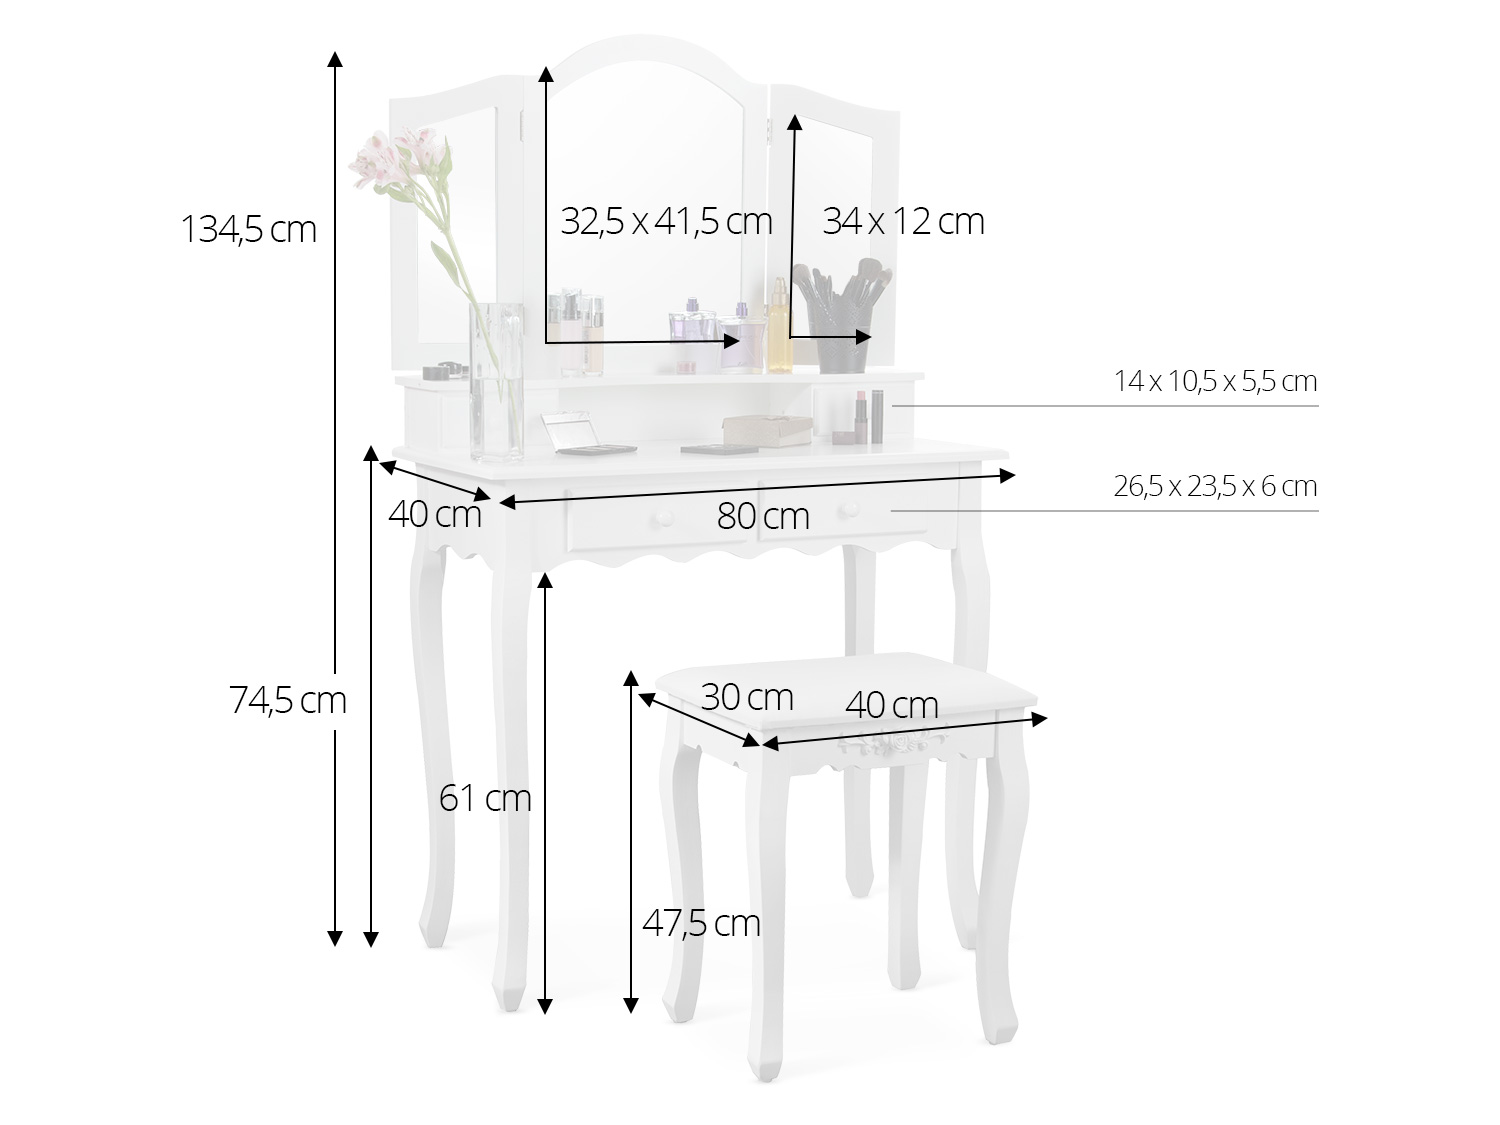 модель Massido Cosmo белого цвета габариты туалетного столика ширина 80 см / глубина  40 см / высота 134,5 см / высота верха: 74,5 см / высота до рабочей поверхности 61 см